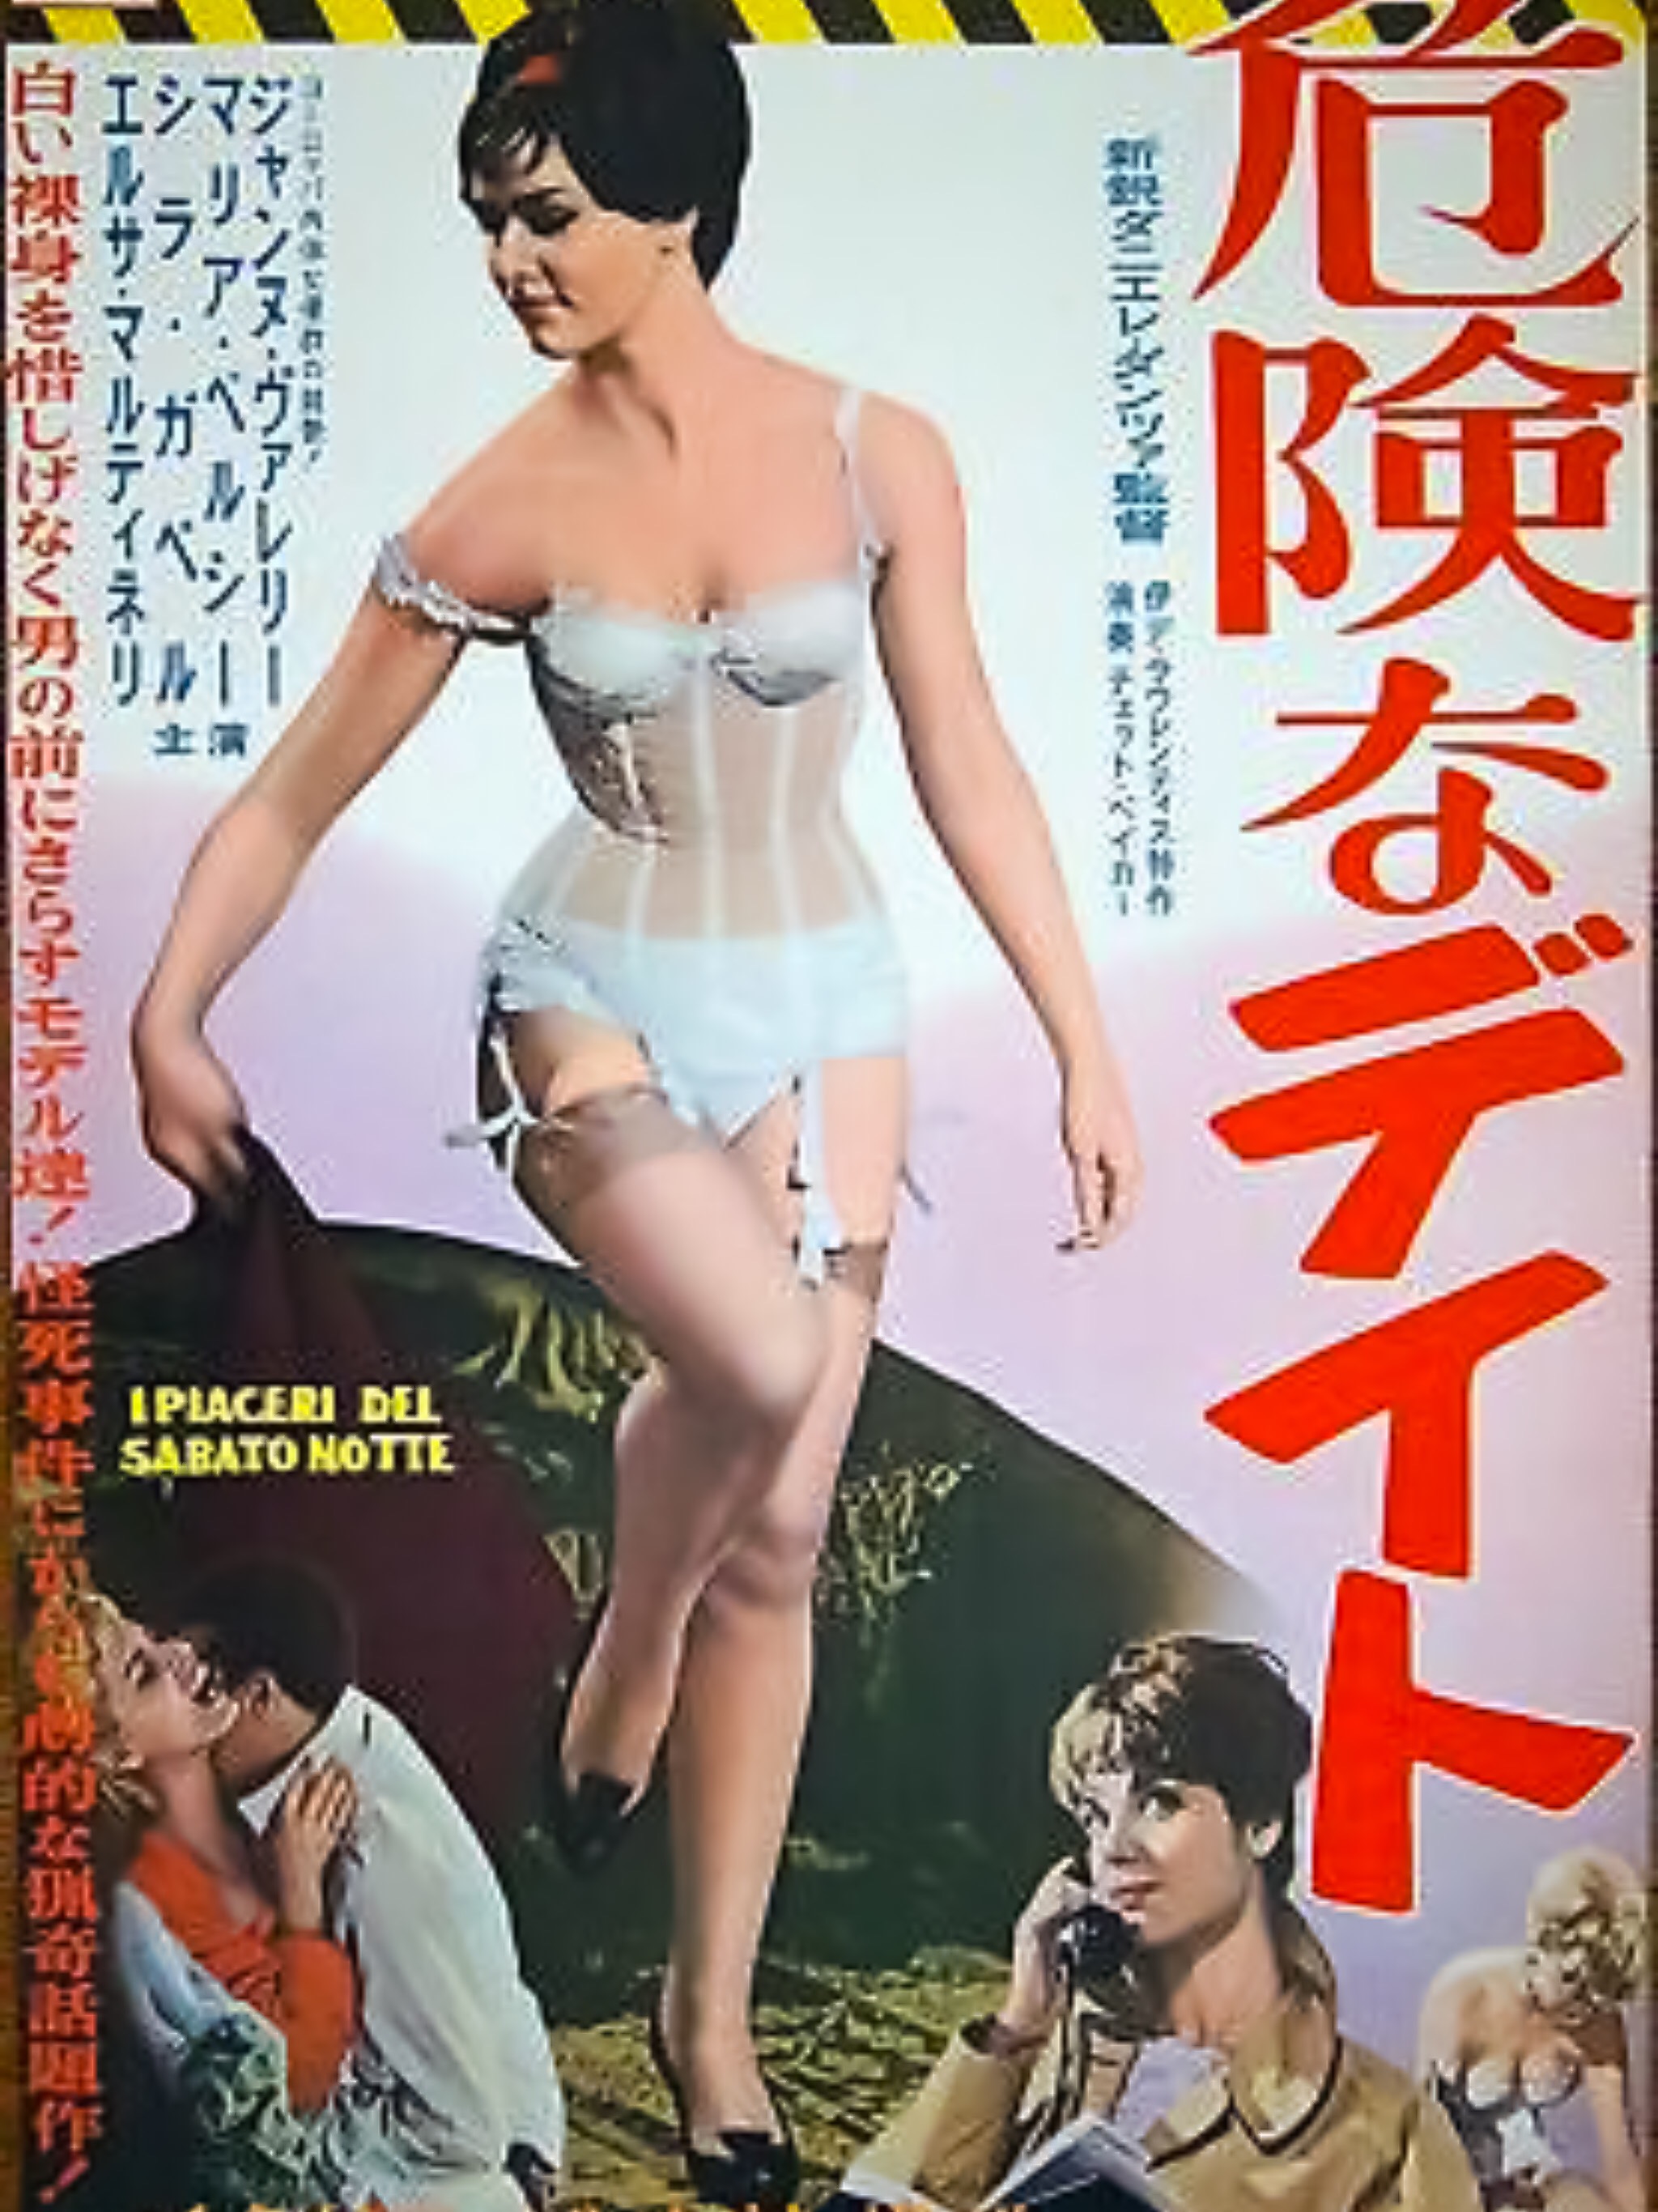 I piaceri del sabato notte (1960) Screenshot 1 